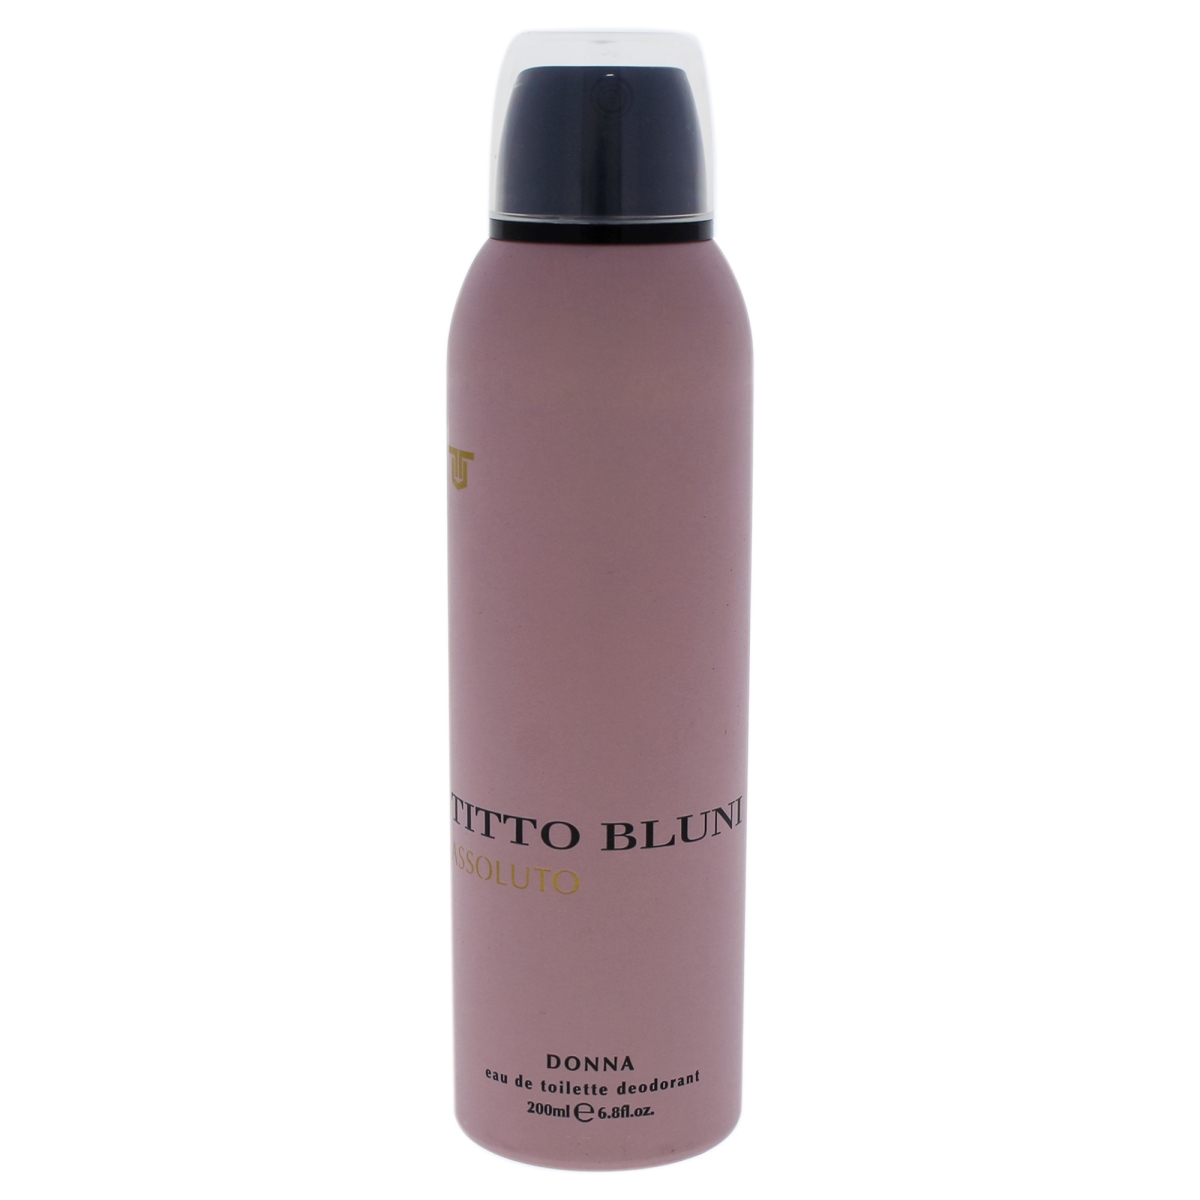 Picture of Titto Bluni I0085737 6.8 oz Assoluto Donna Deodorant Spray for Women